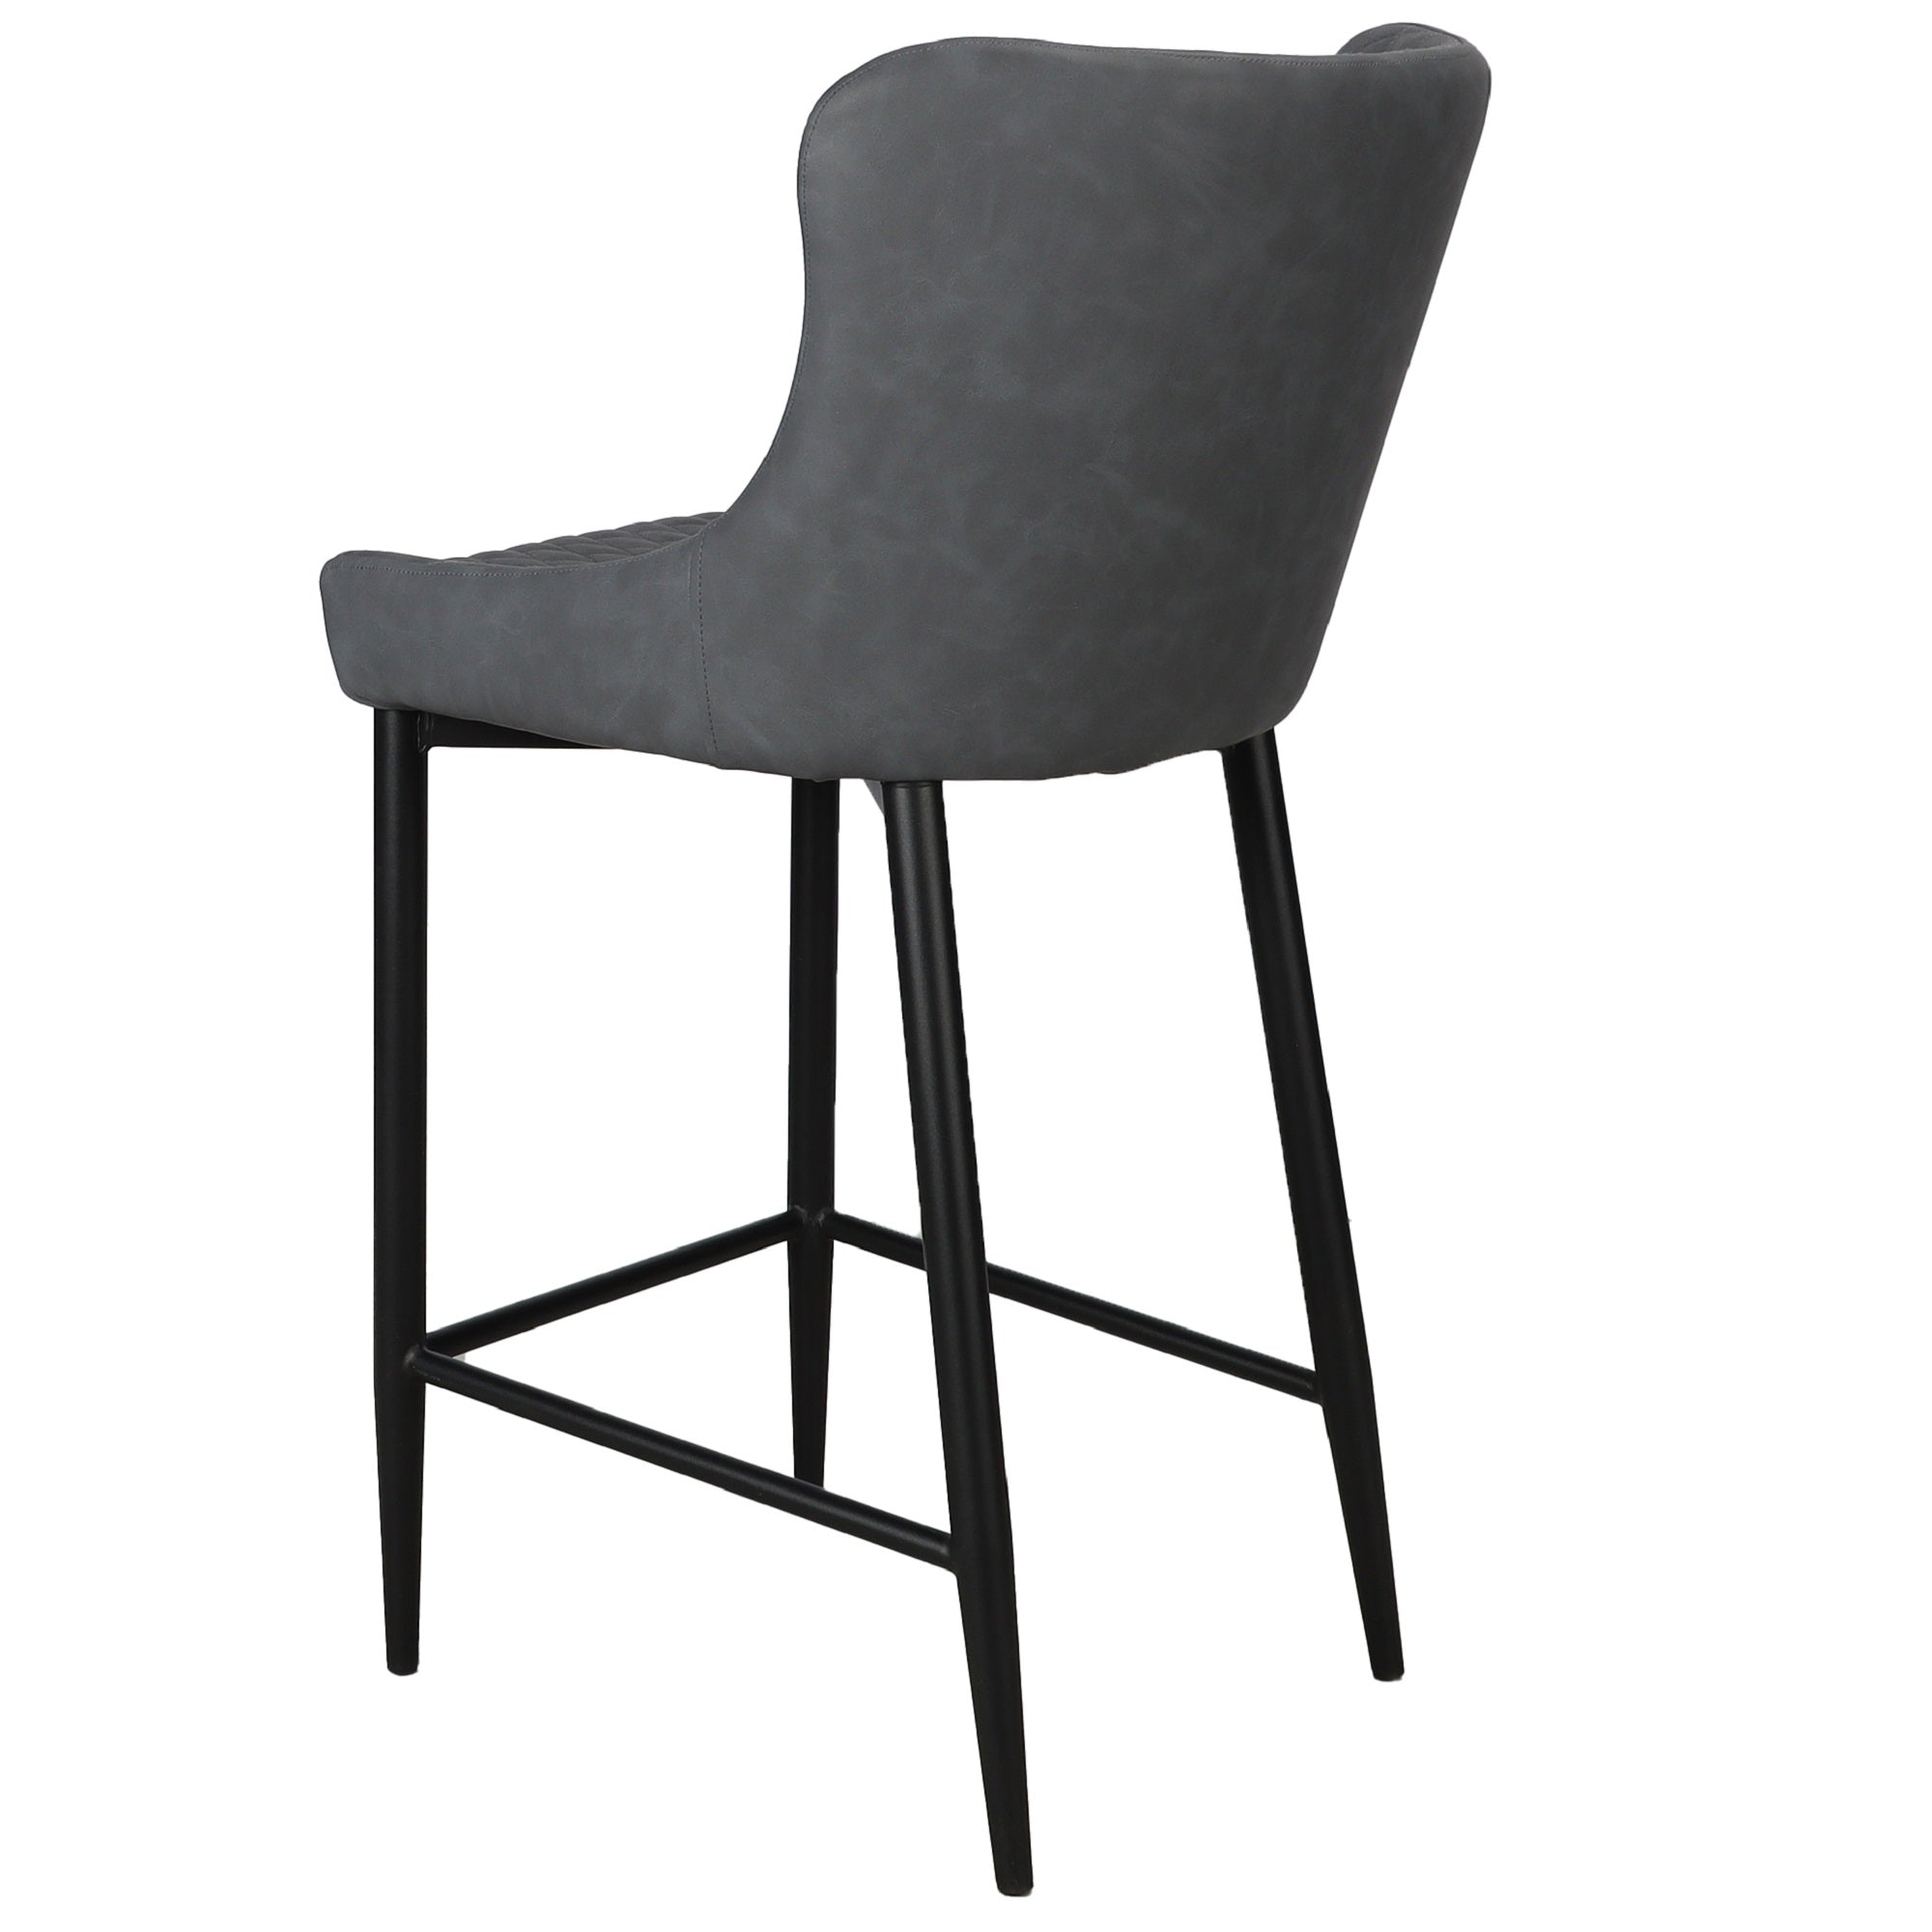 Ontario Counter Chair Grey